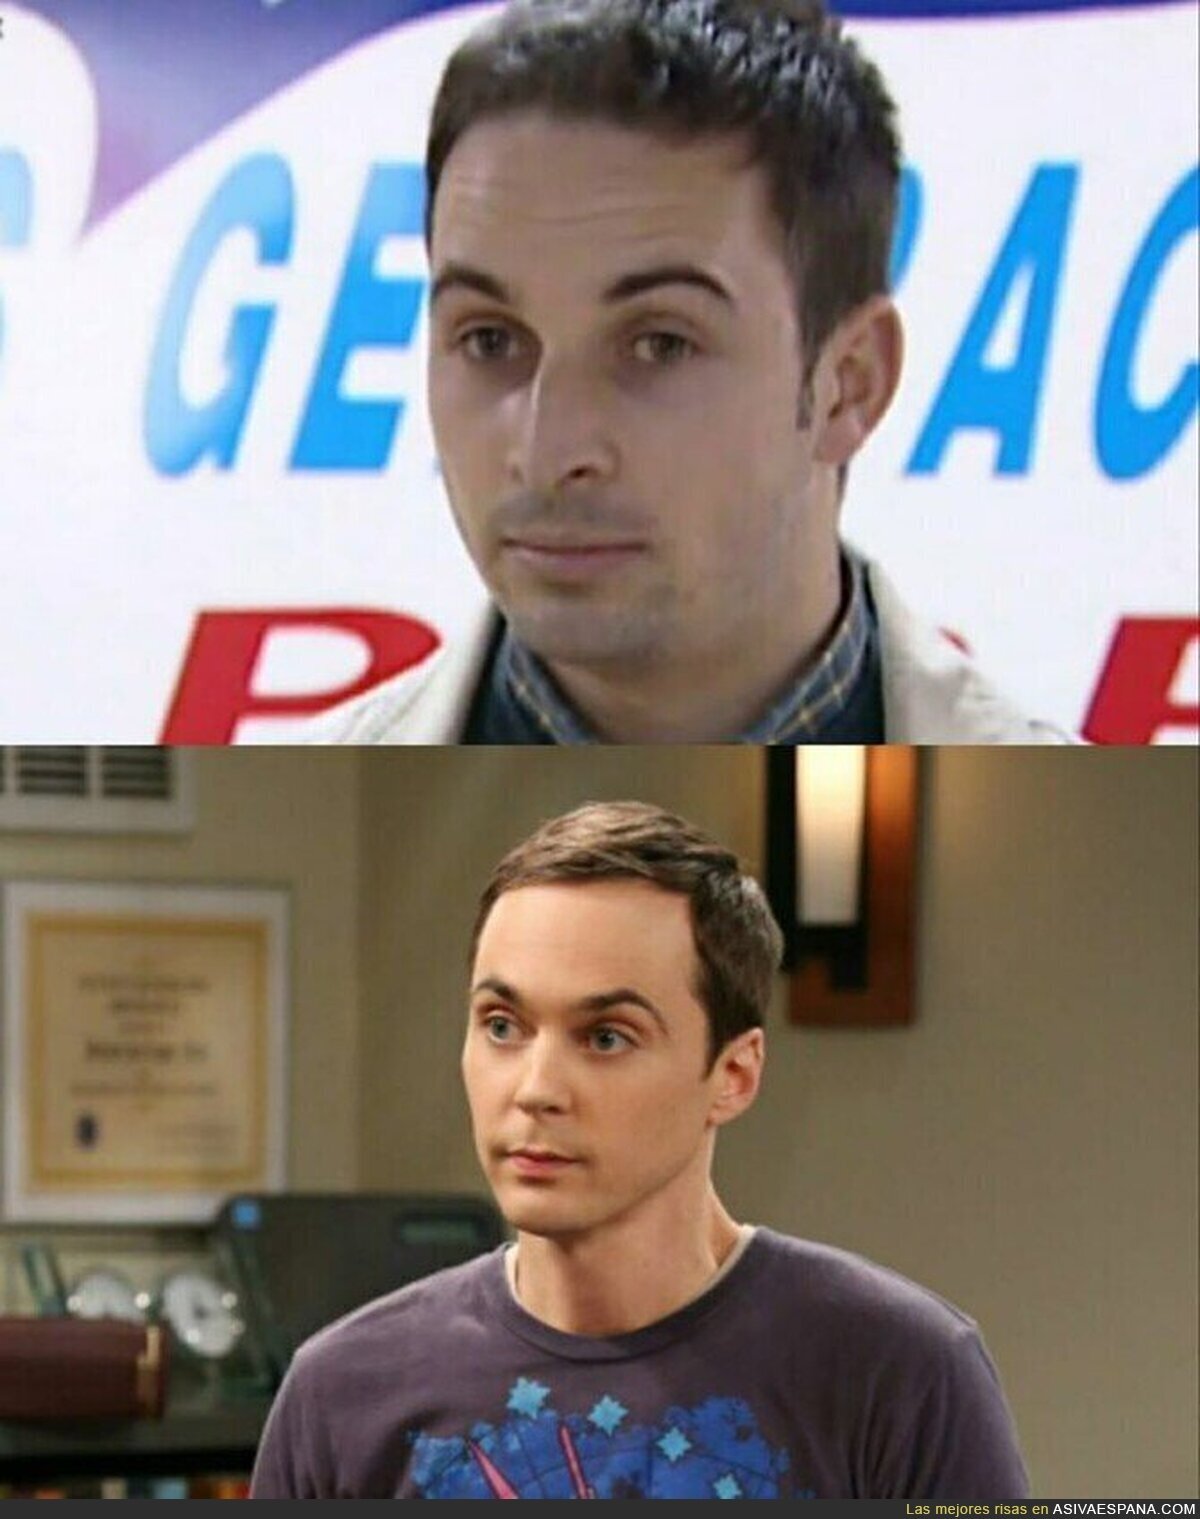 El pobre Sheldon no merece tal comparación